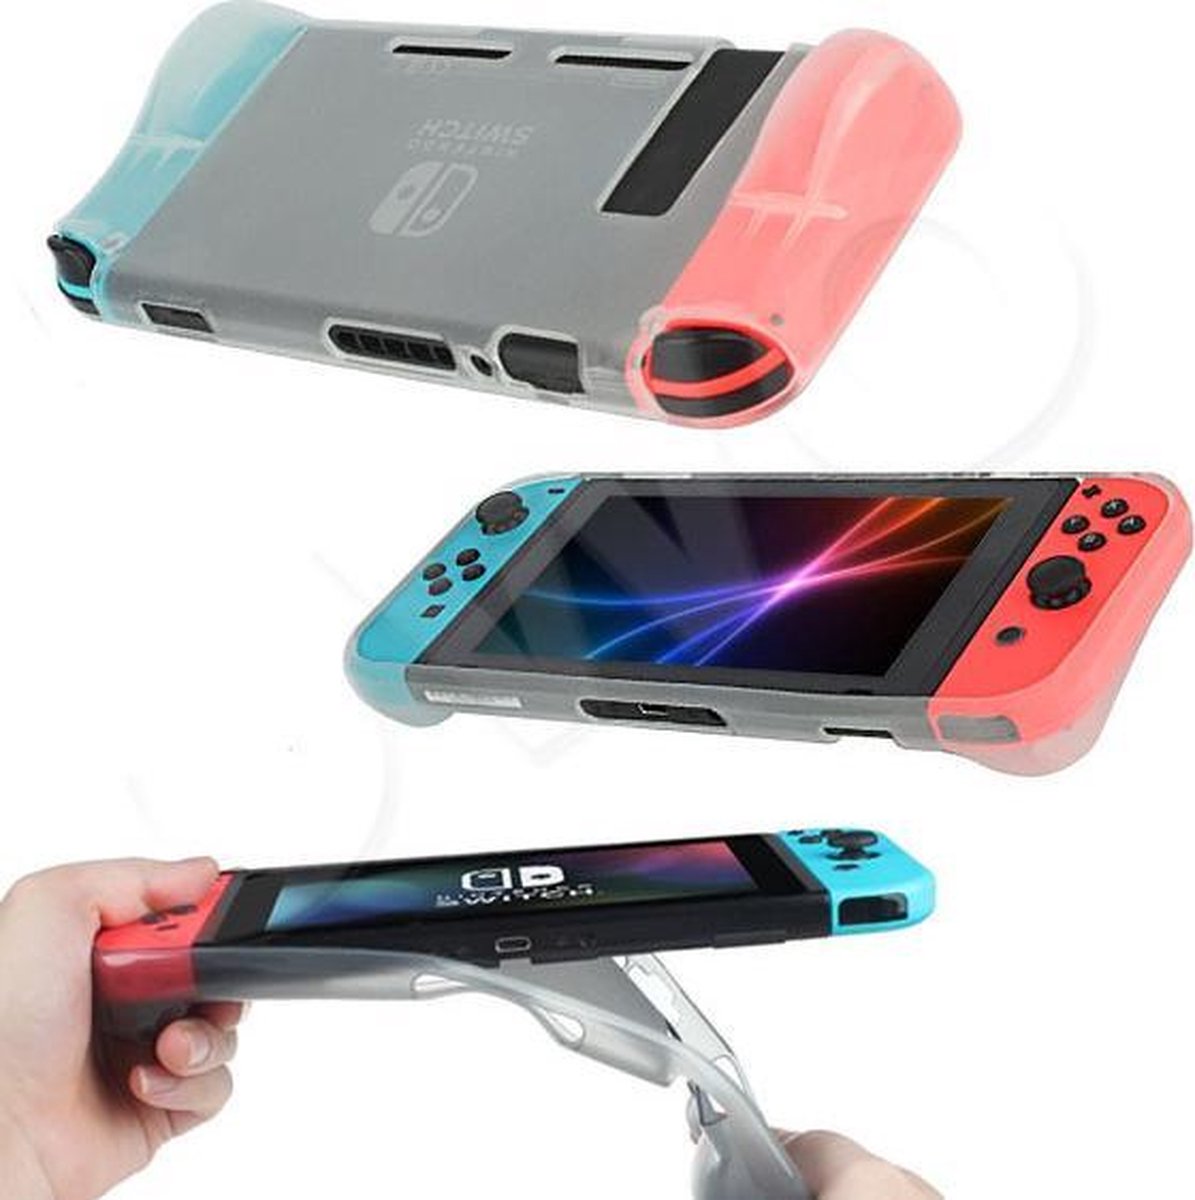 beschermende soft cover geschikt voor de Nintendo Switch - goede case met betere grip voorkomt ook kramp aan de hand - transparant